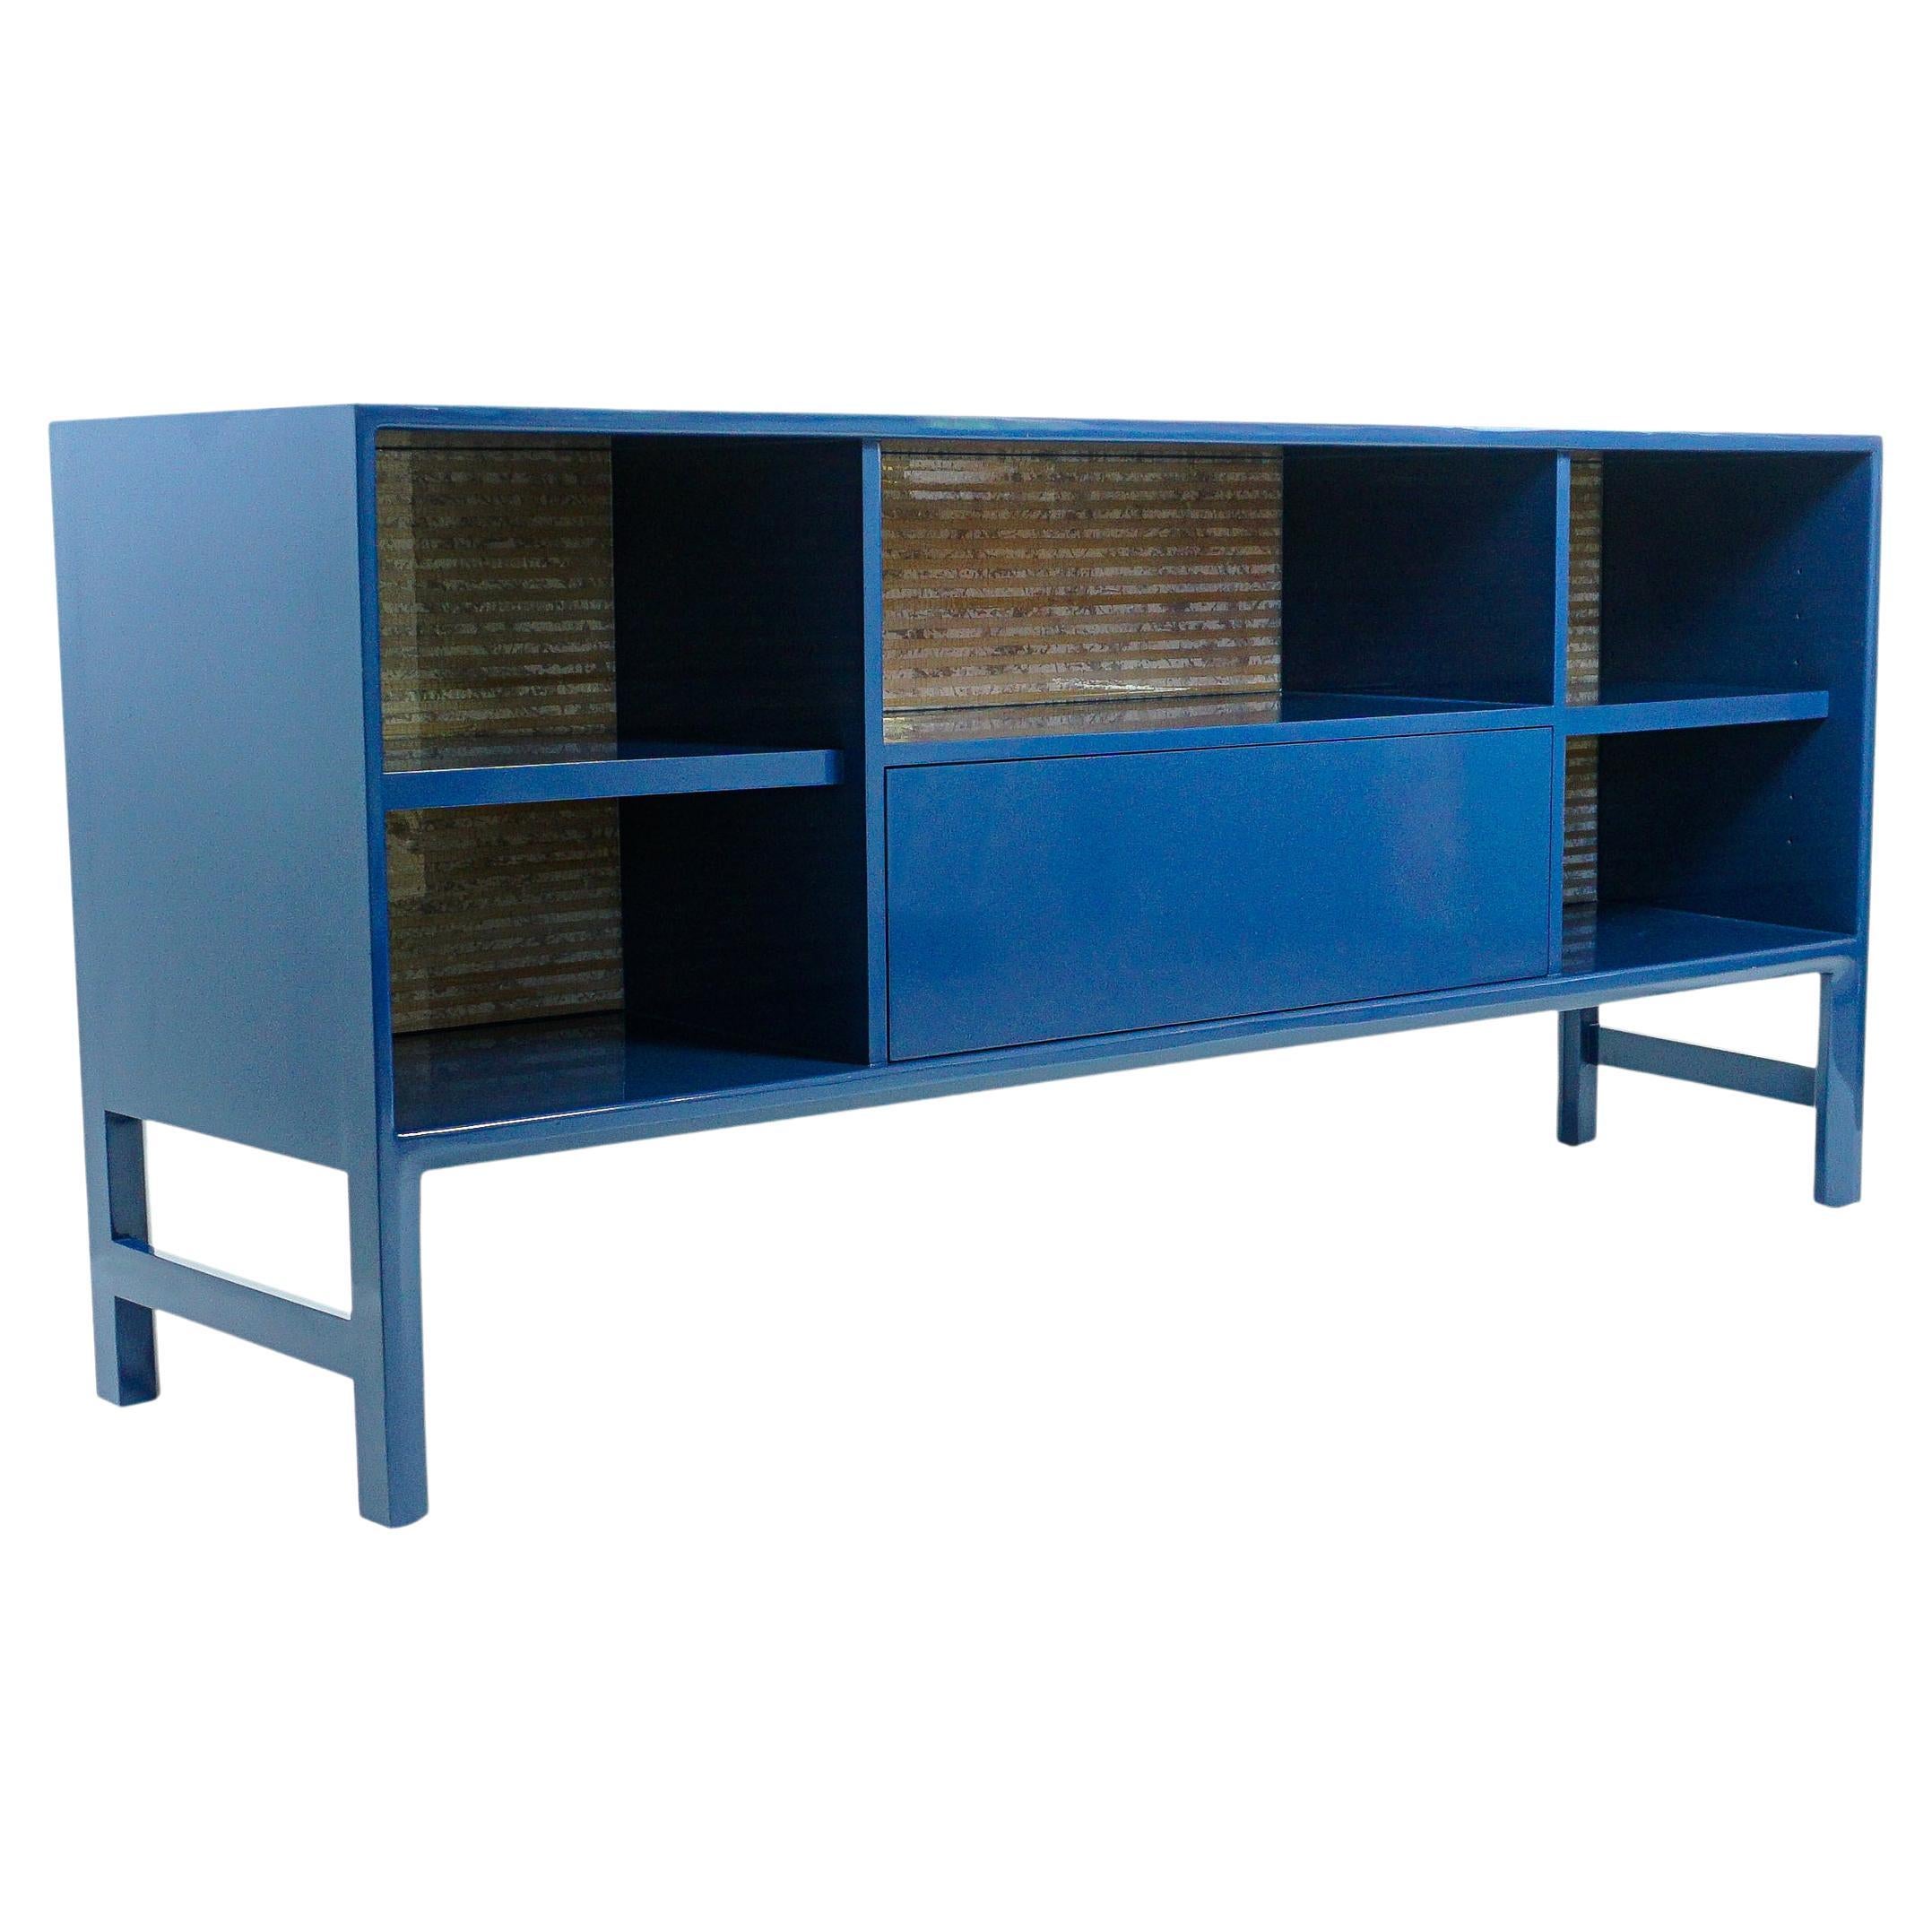 Blau lackiertes Sideboard / Buffet / Konsole, anpassbar